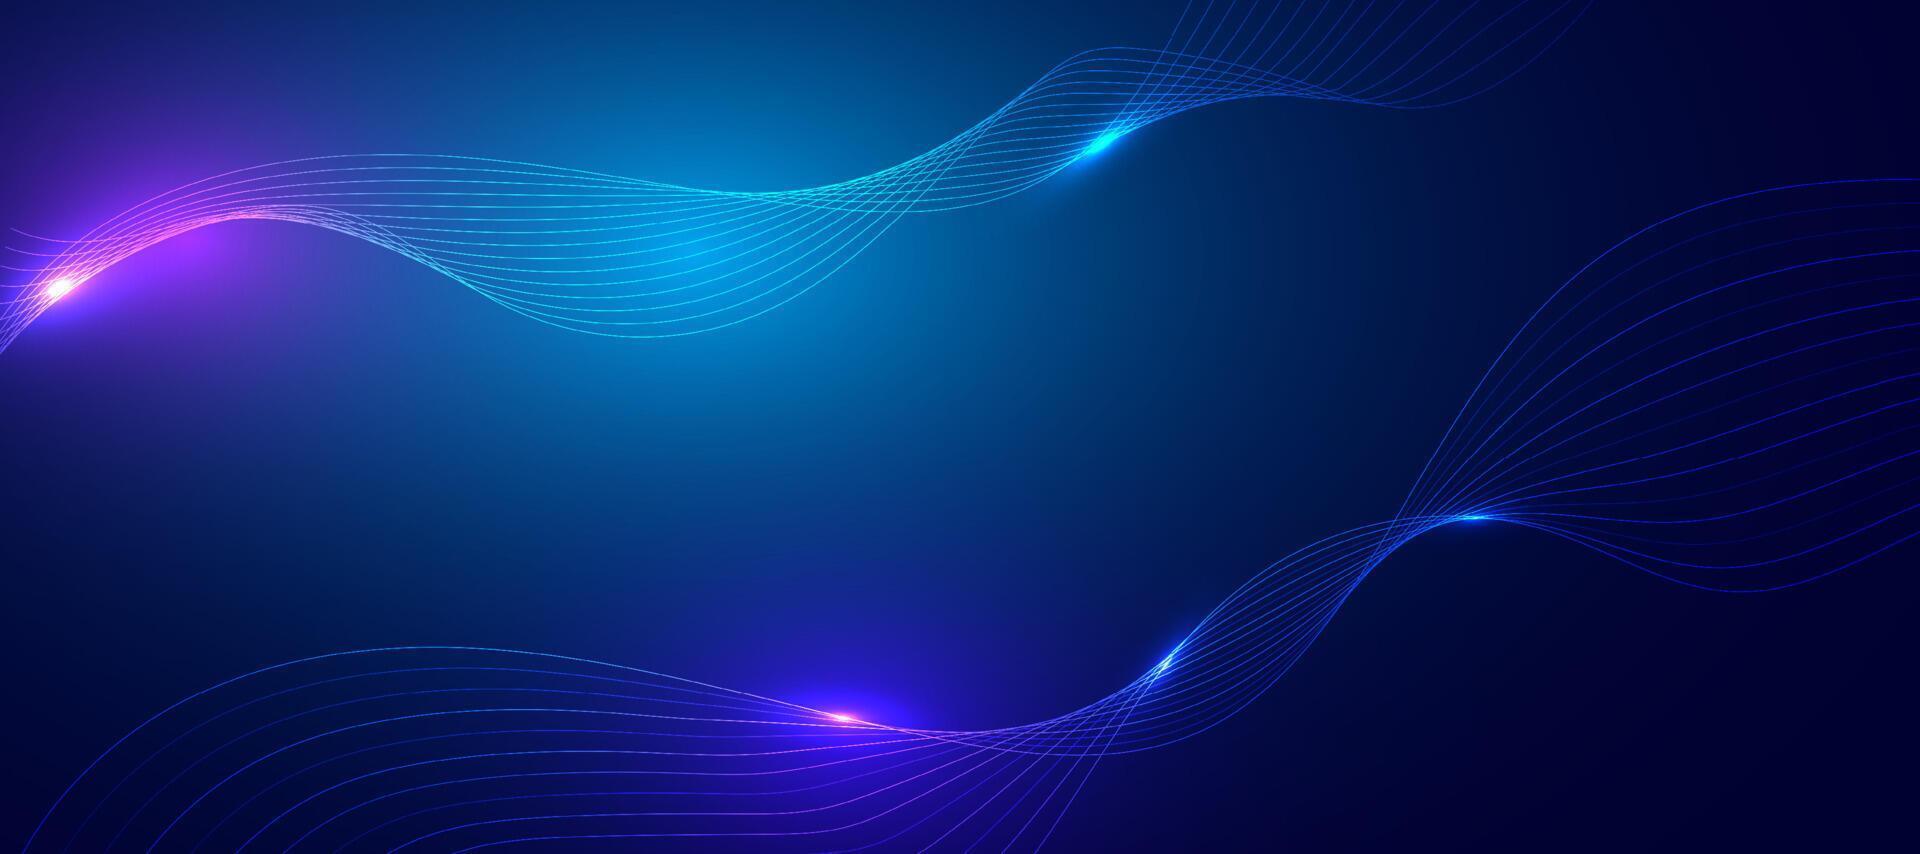 fondo azul abstracto con líneas fluidas. vector